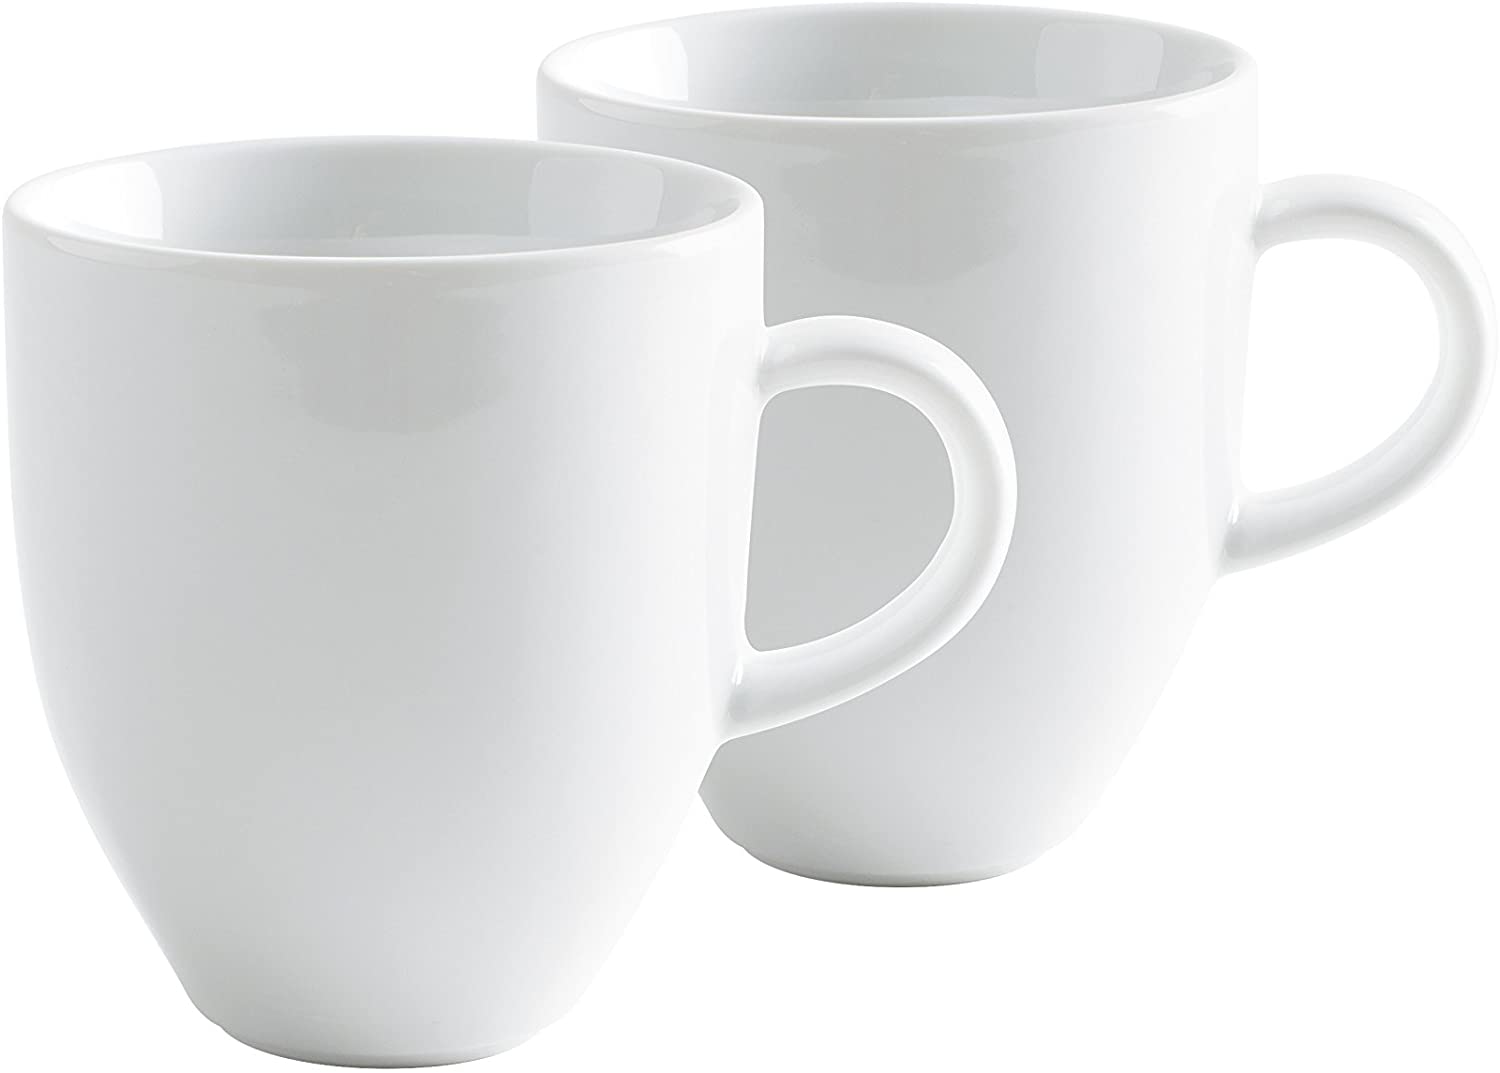 Kahla Cafe Sommelier Large Mug, White Color, Set Of 2 Pieces